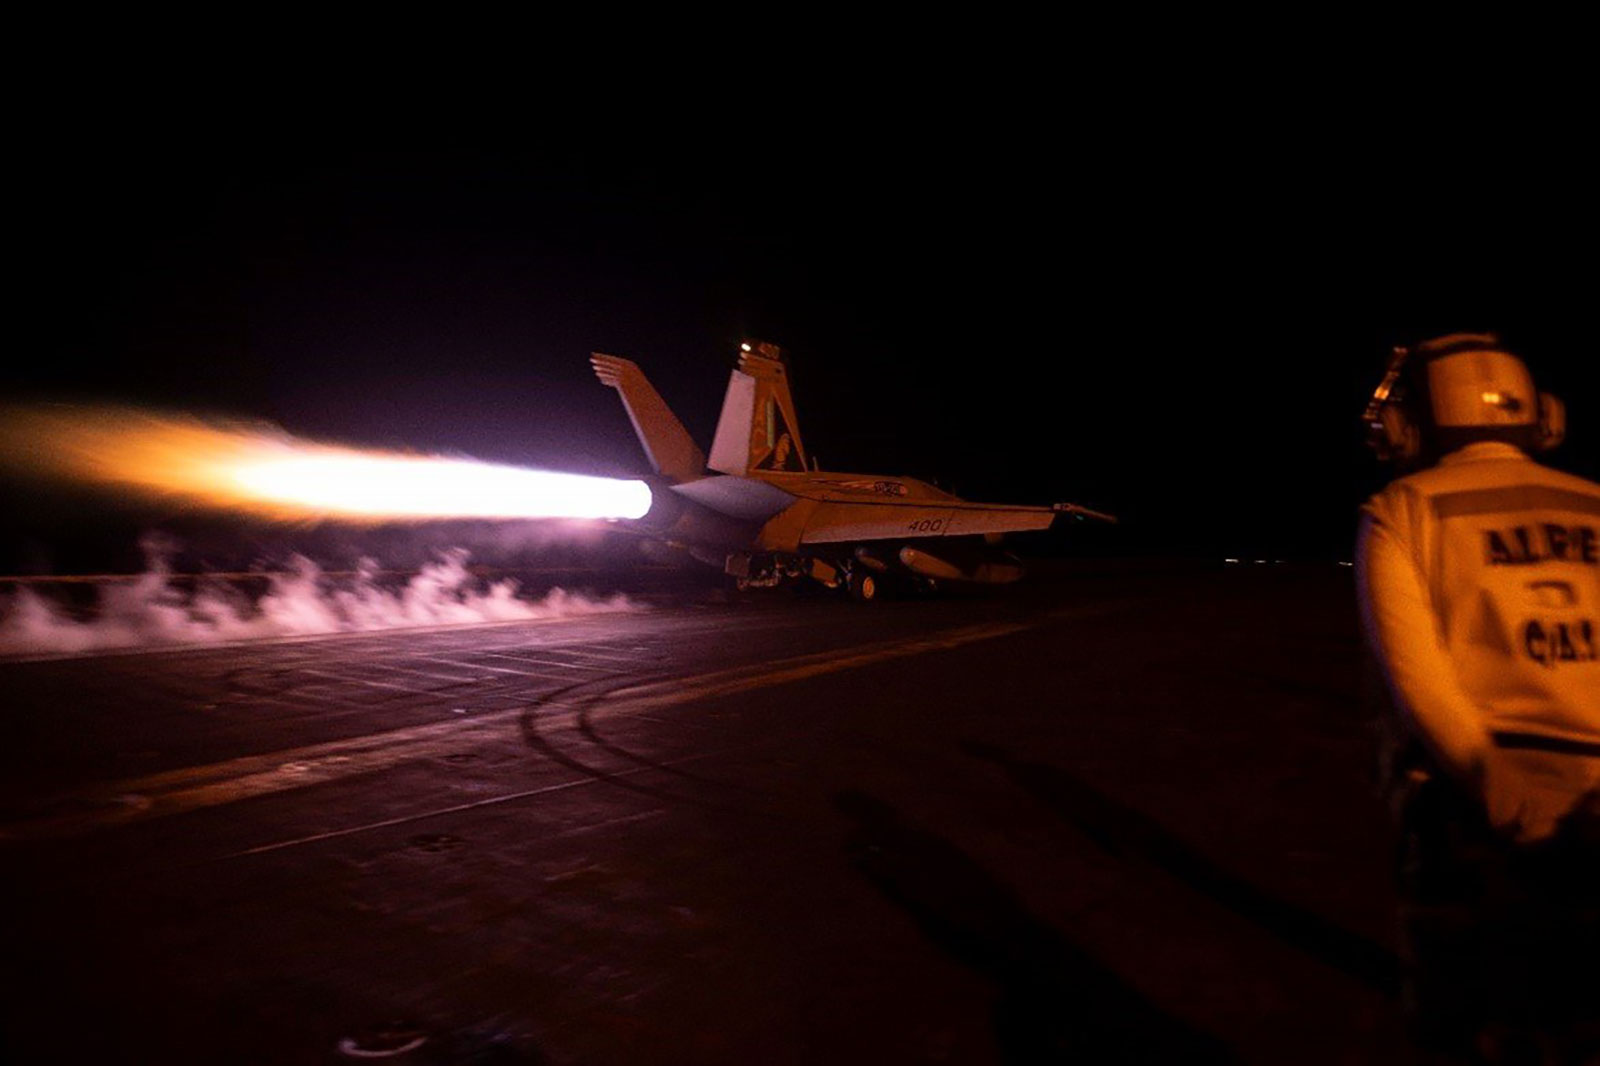 La coalición liderada por Estados Unidos lleva a cabo ataques aéreos en Yemen en respuesta a la agresión hutí en el Mar Rojo el 3 de febrero.